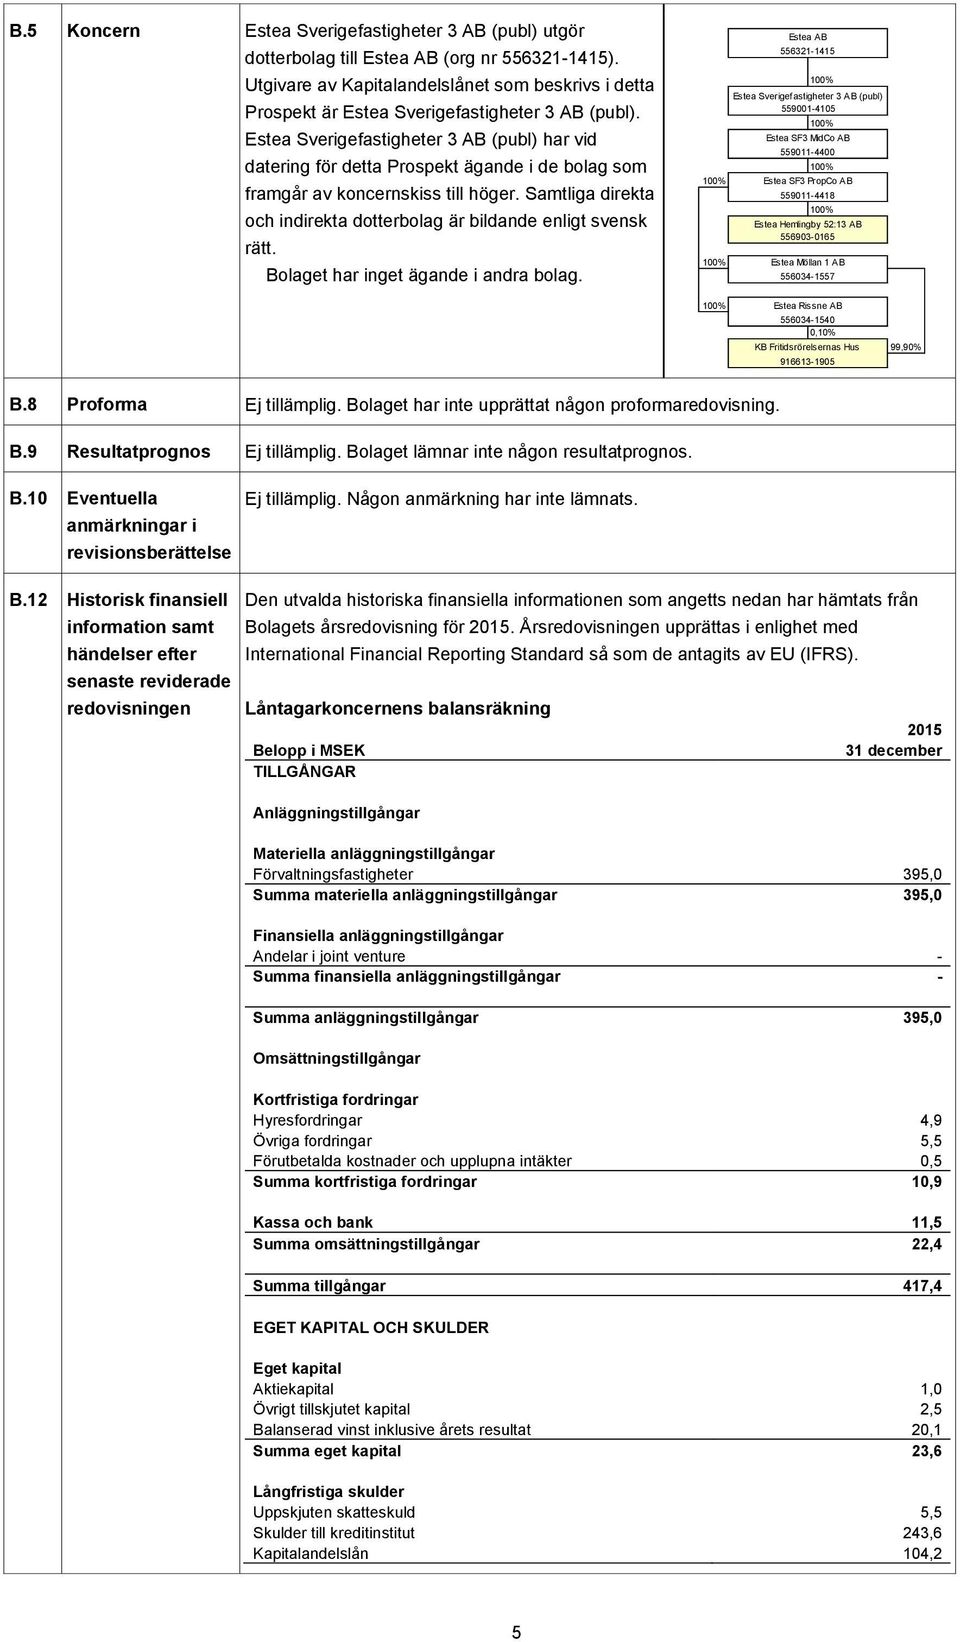 Estea Sverigefastigheter 3 AB (publ) har vid datering för detta Prospekt ägande i de bolag som framgår av koncernskiss till höger.